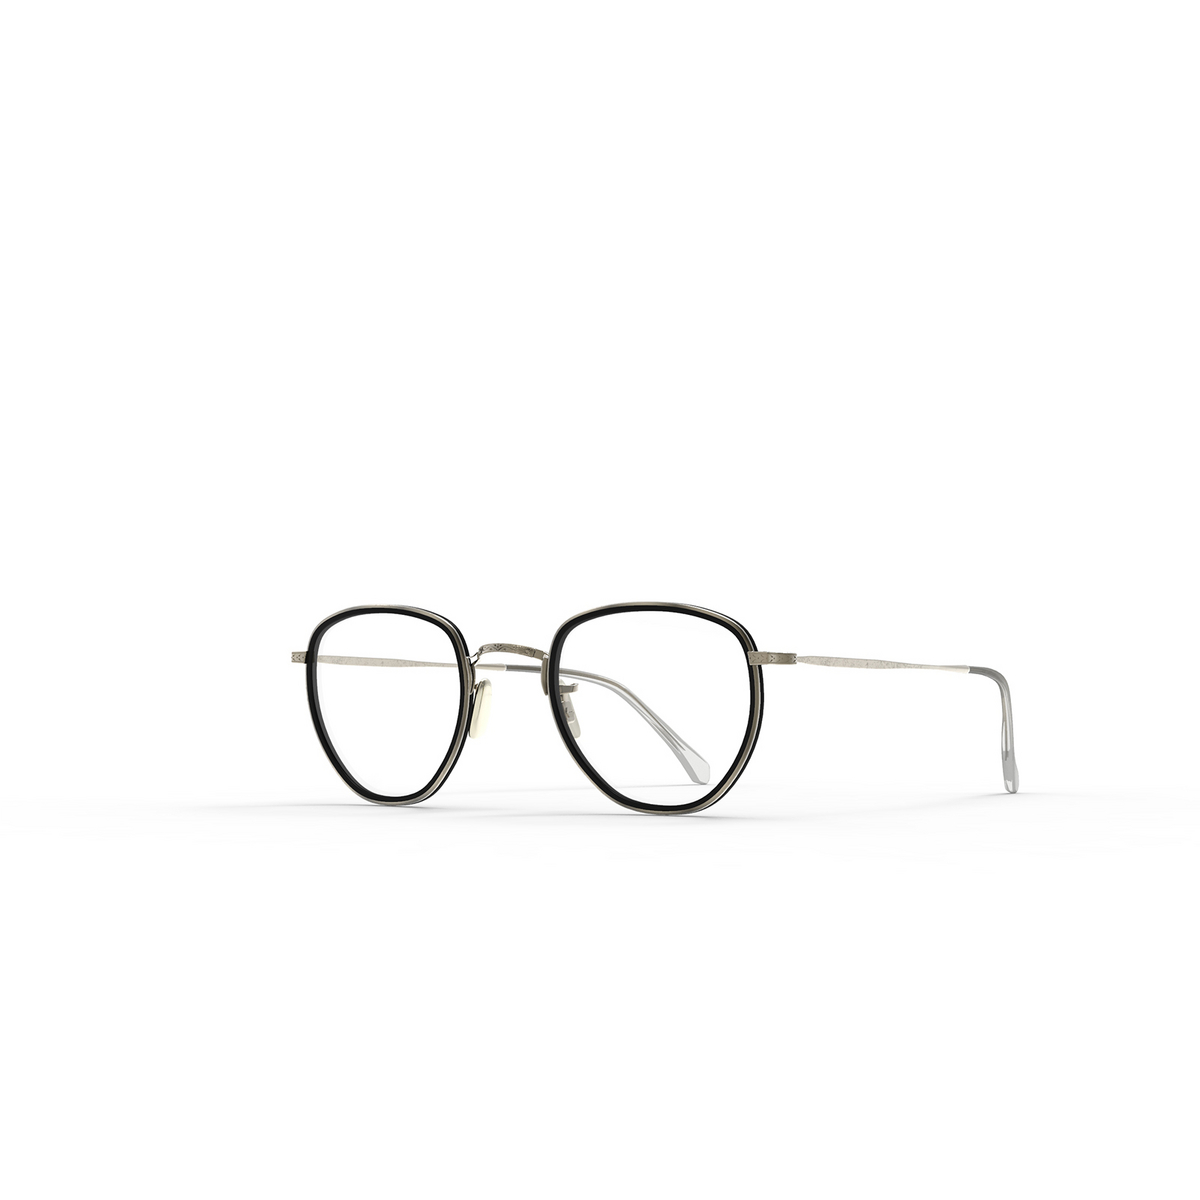 Mr. Leight ROKU C Eyeglasses MBK-ATG Matte Black-Antique Gold - 2/3